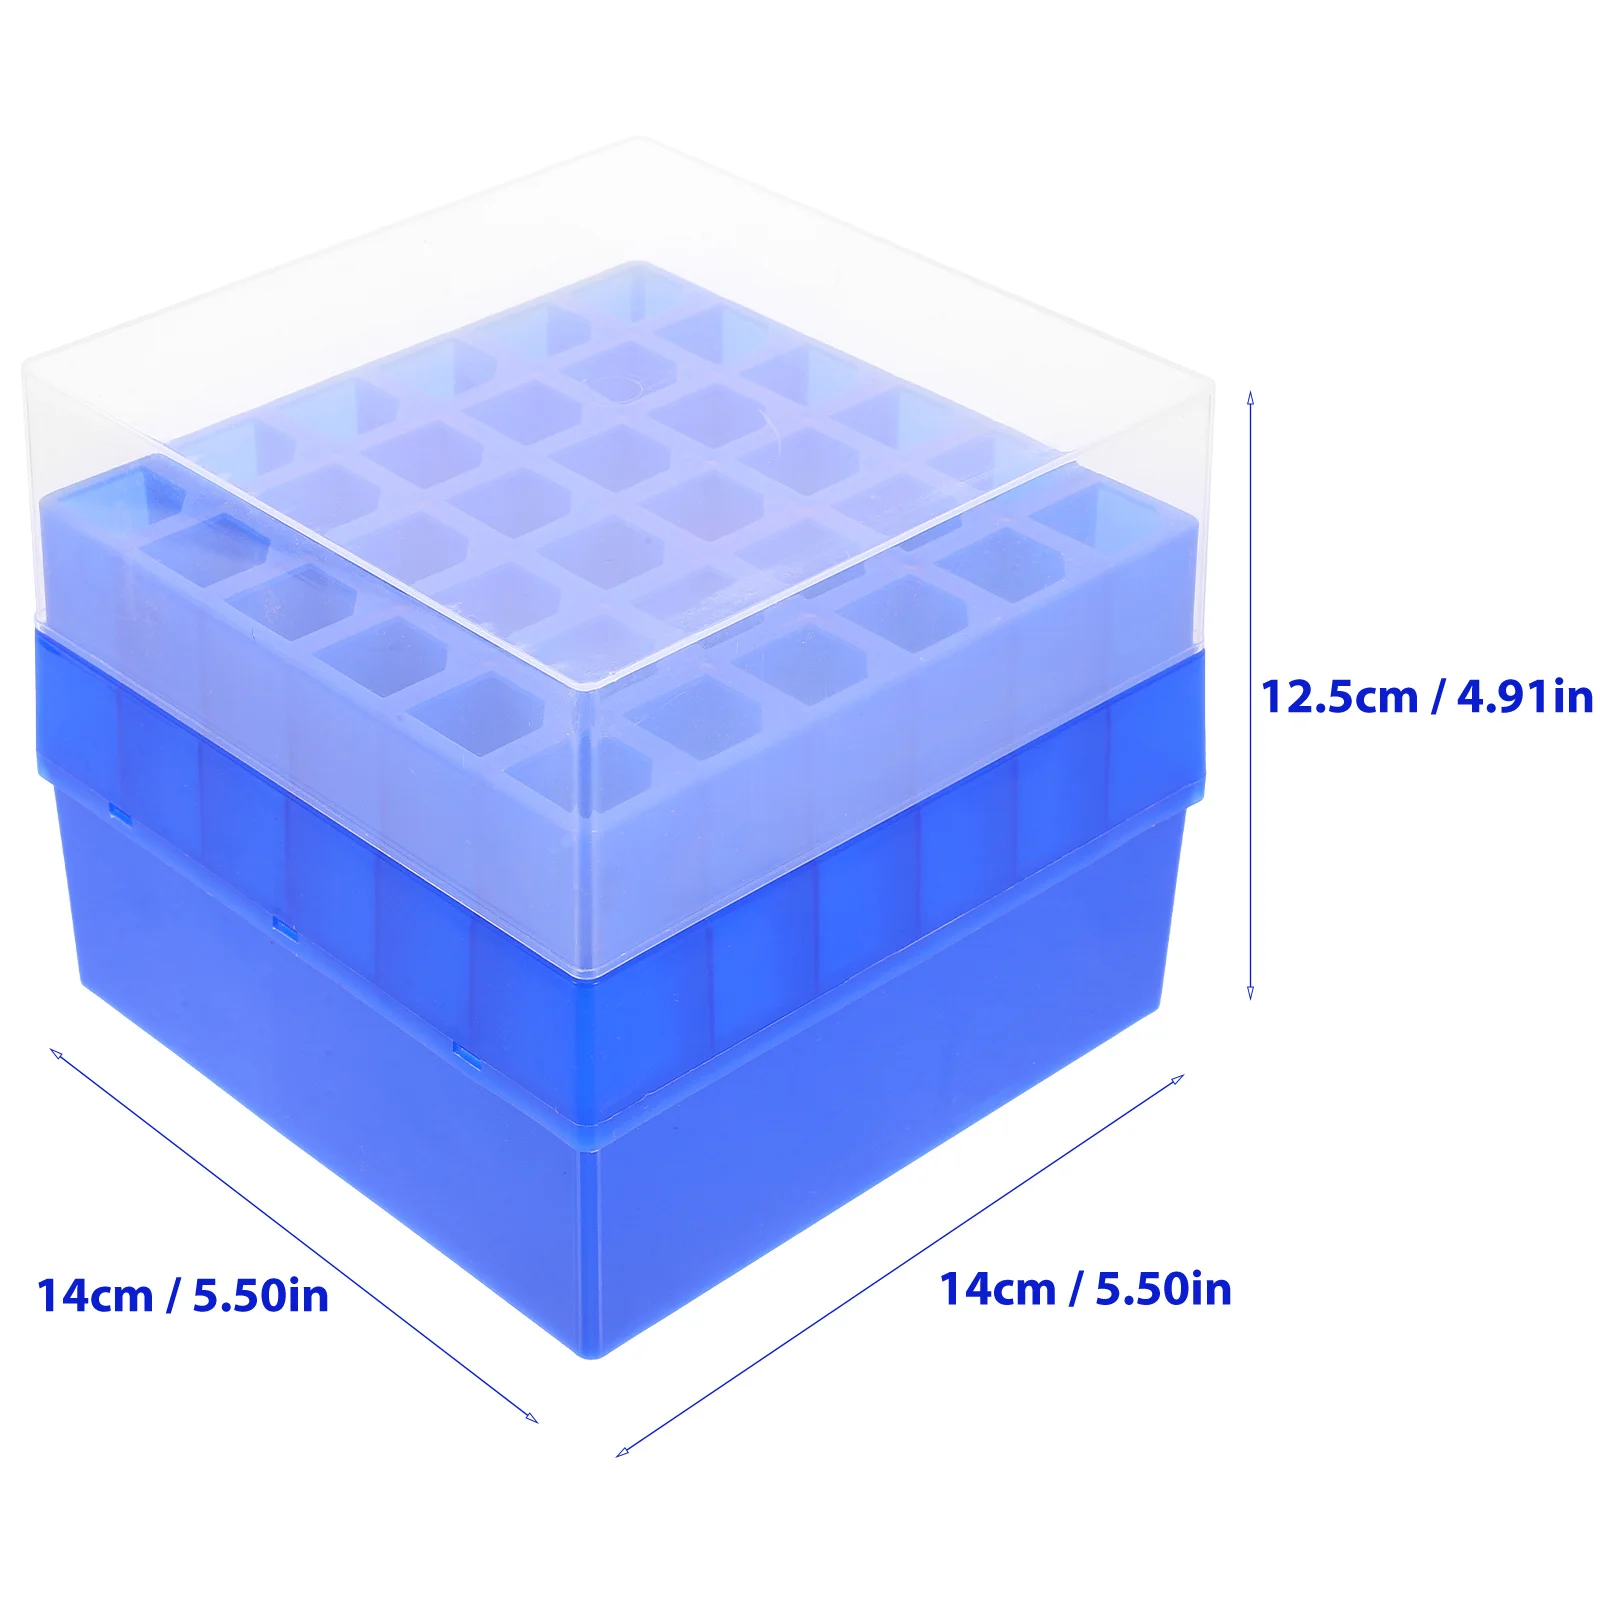 Tsentrifuugiklaasi Sügavkülmik Box Test Omanik Pudel Juhul Cryobox Torud, Karbid Plastikust Konteiner Labor - 4